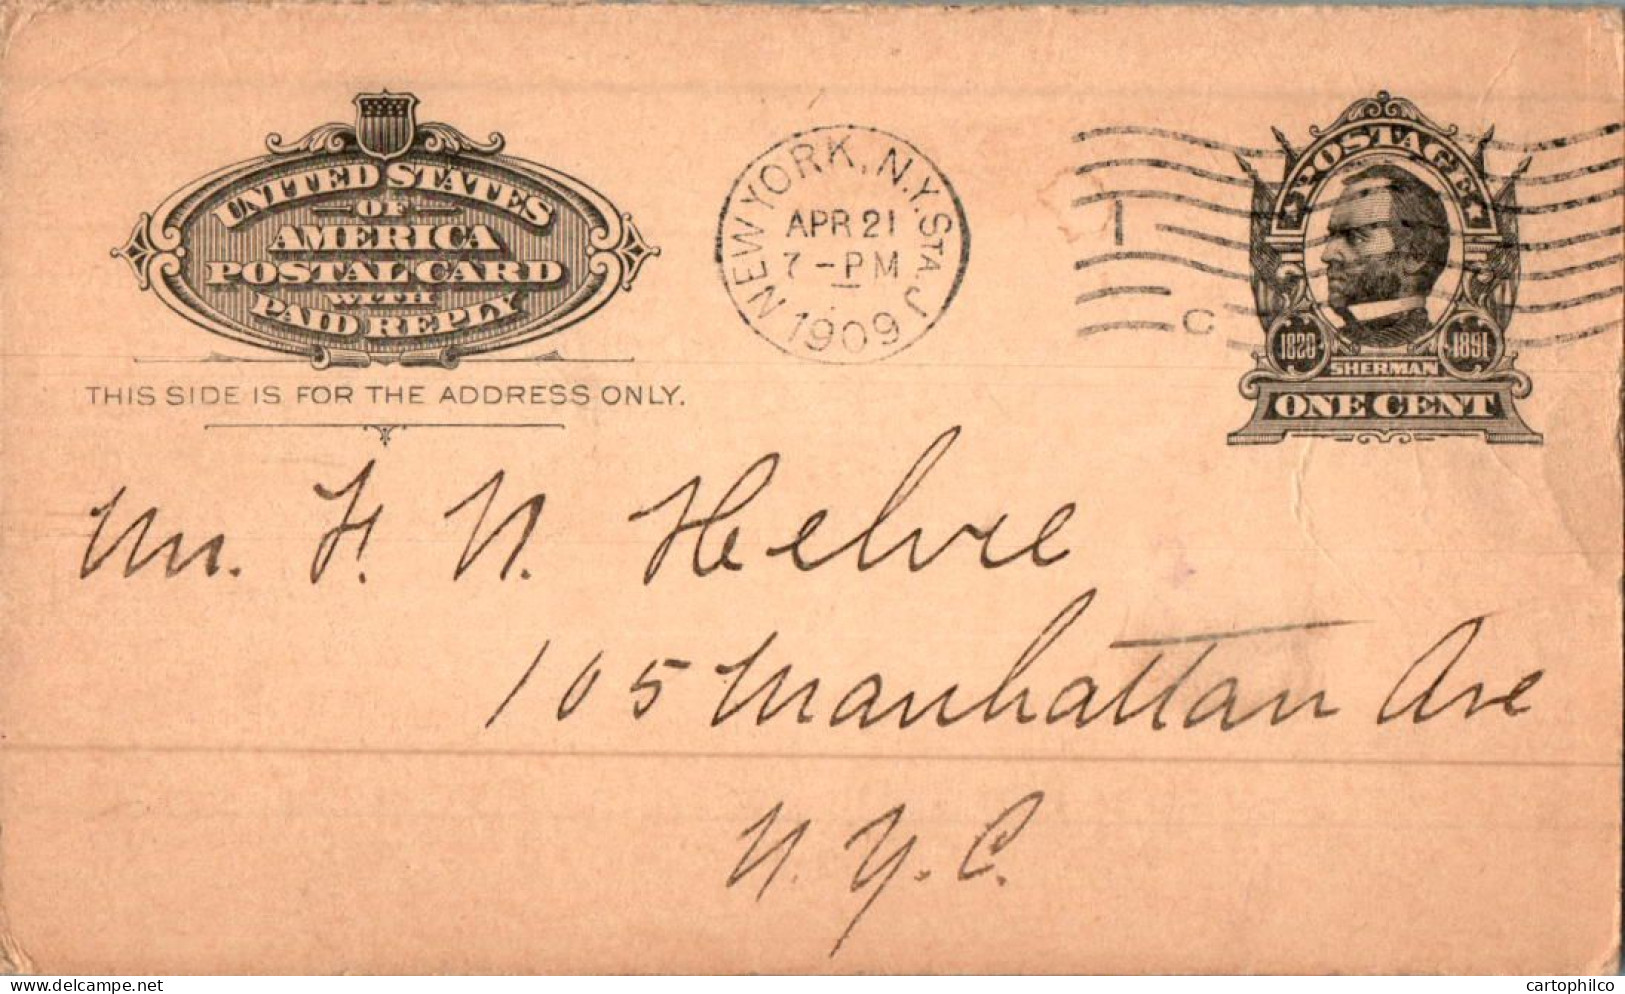 US Postal Stationery 1c New York 1909  - ...-1900